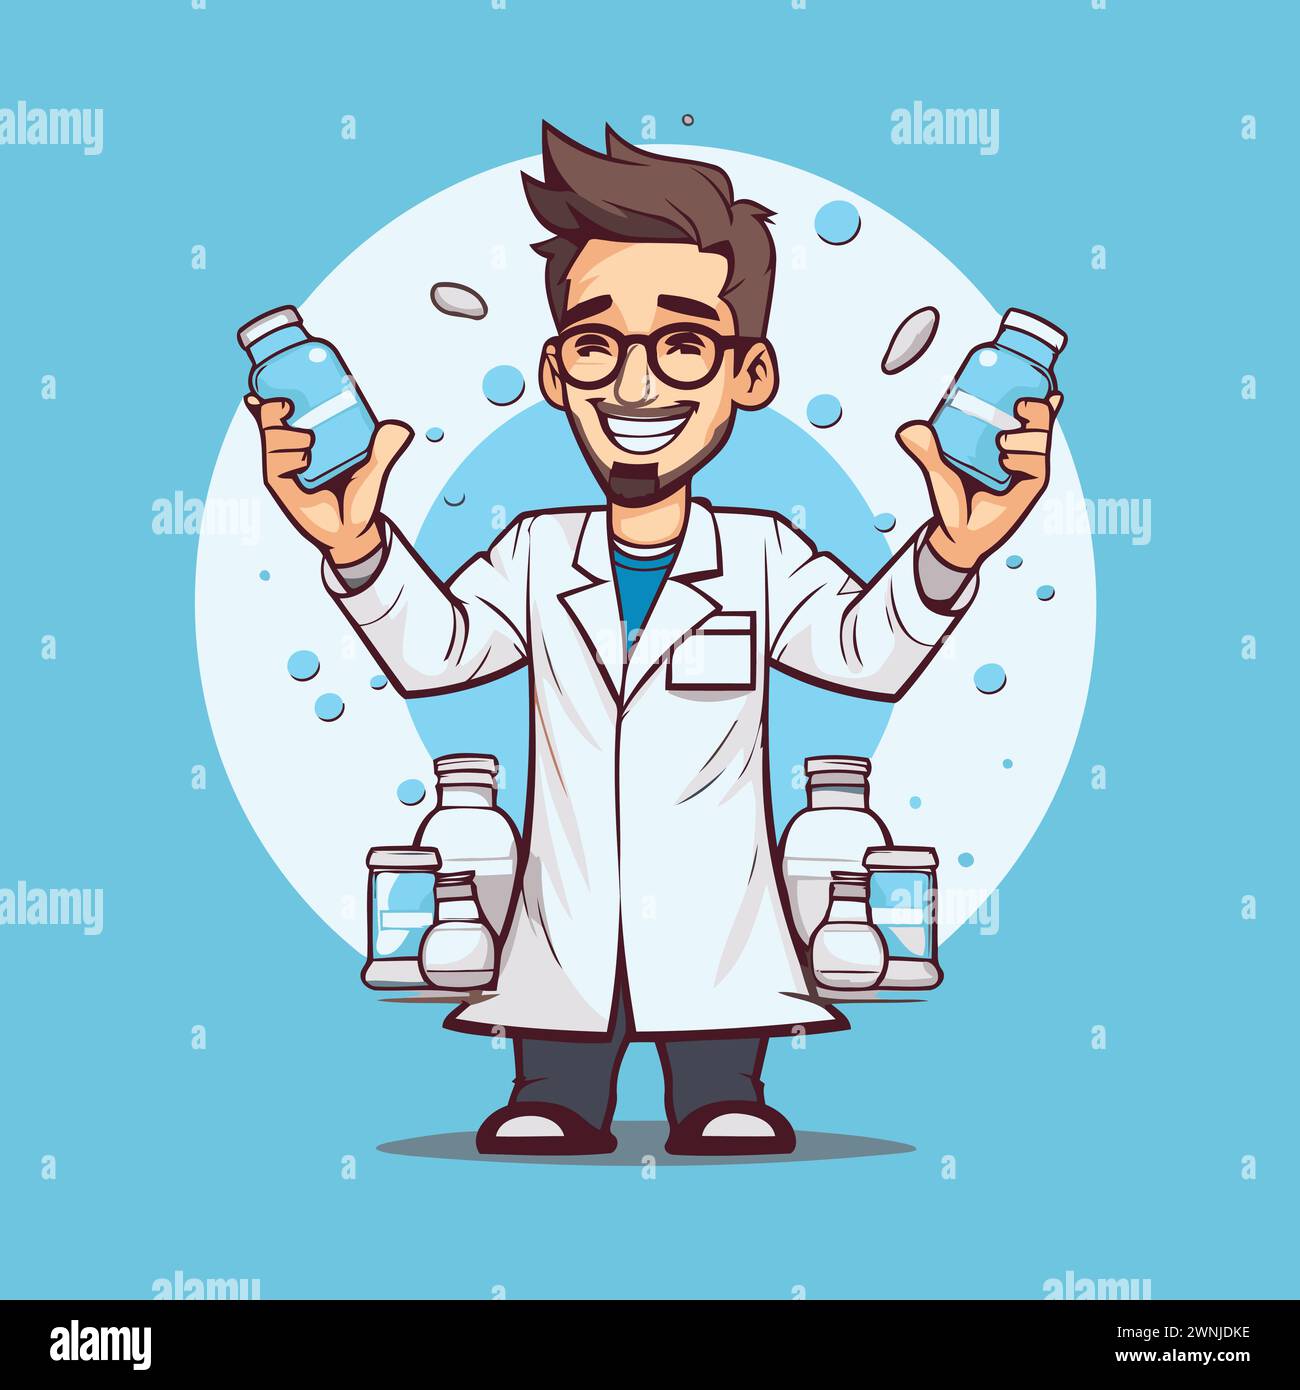 Cartoonarzt mit Arzneiflaschen. Vektorillustration im Cartoon-Stil. Stock Vektor